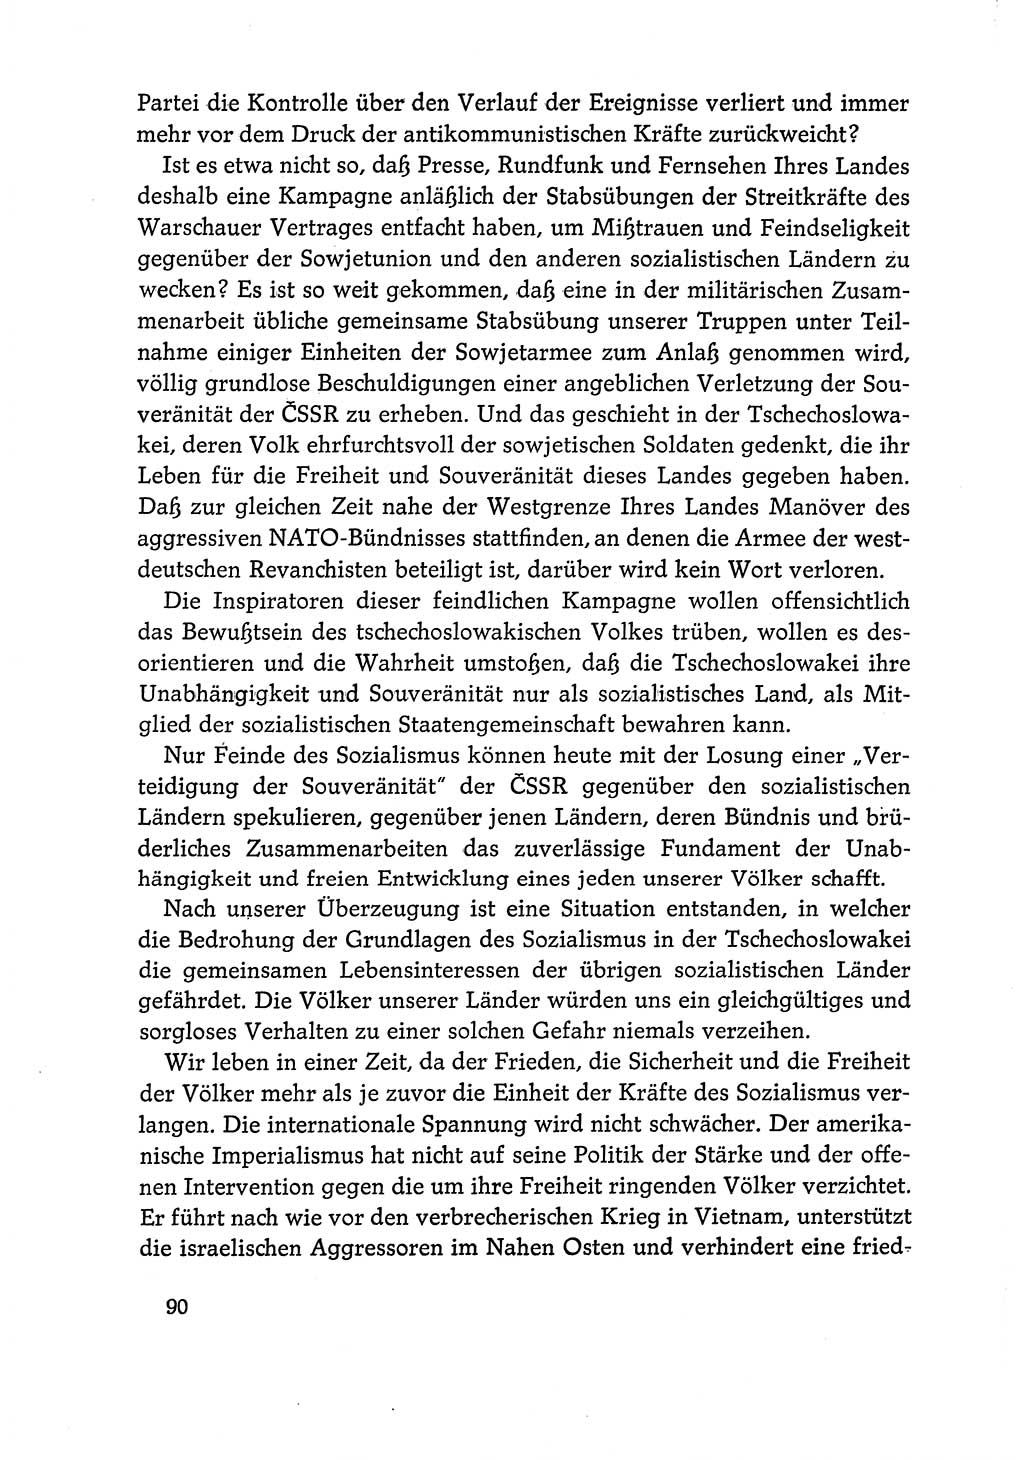 Dokumente der Sozialistischen Einheitspartei Deutschlands (SED) [Deutsche Demokratische Republik (DDR)] 1968-1969, Seite 90 (Dok. SED DDR 1968-1969, S. 90)